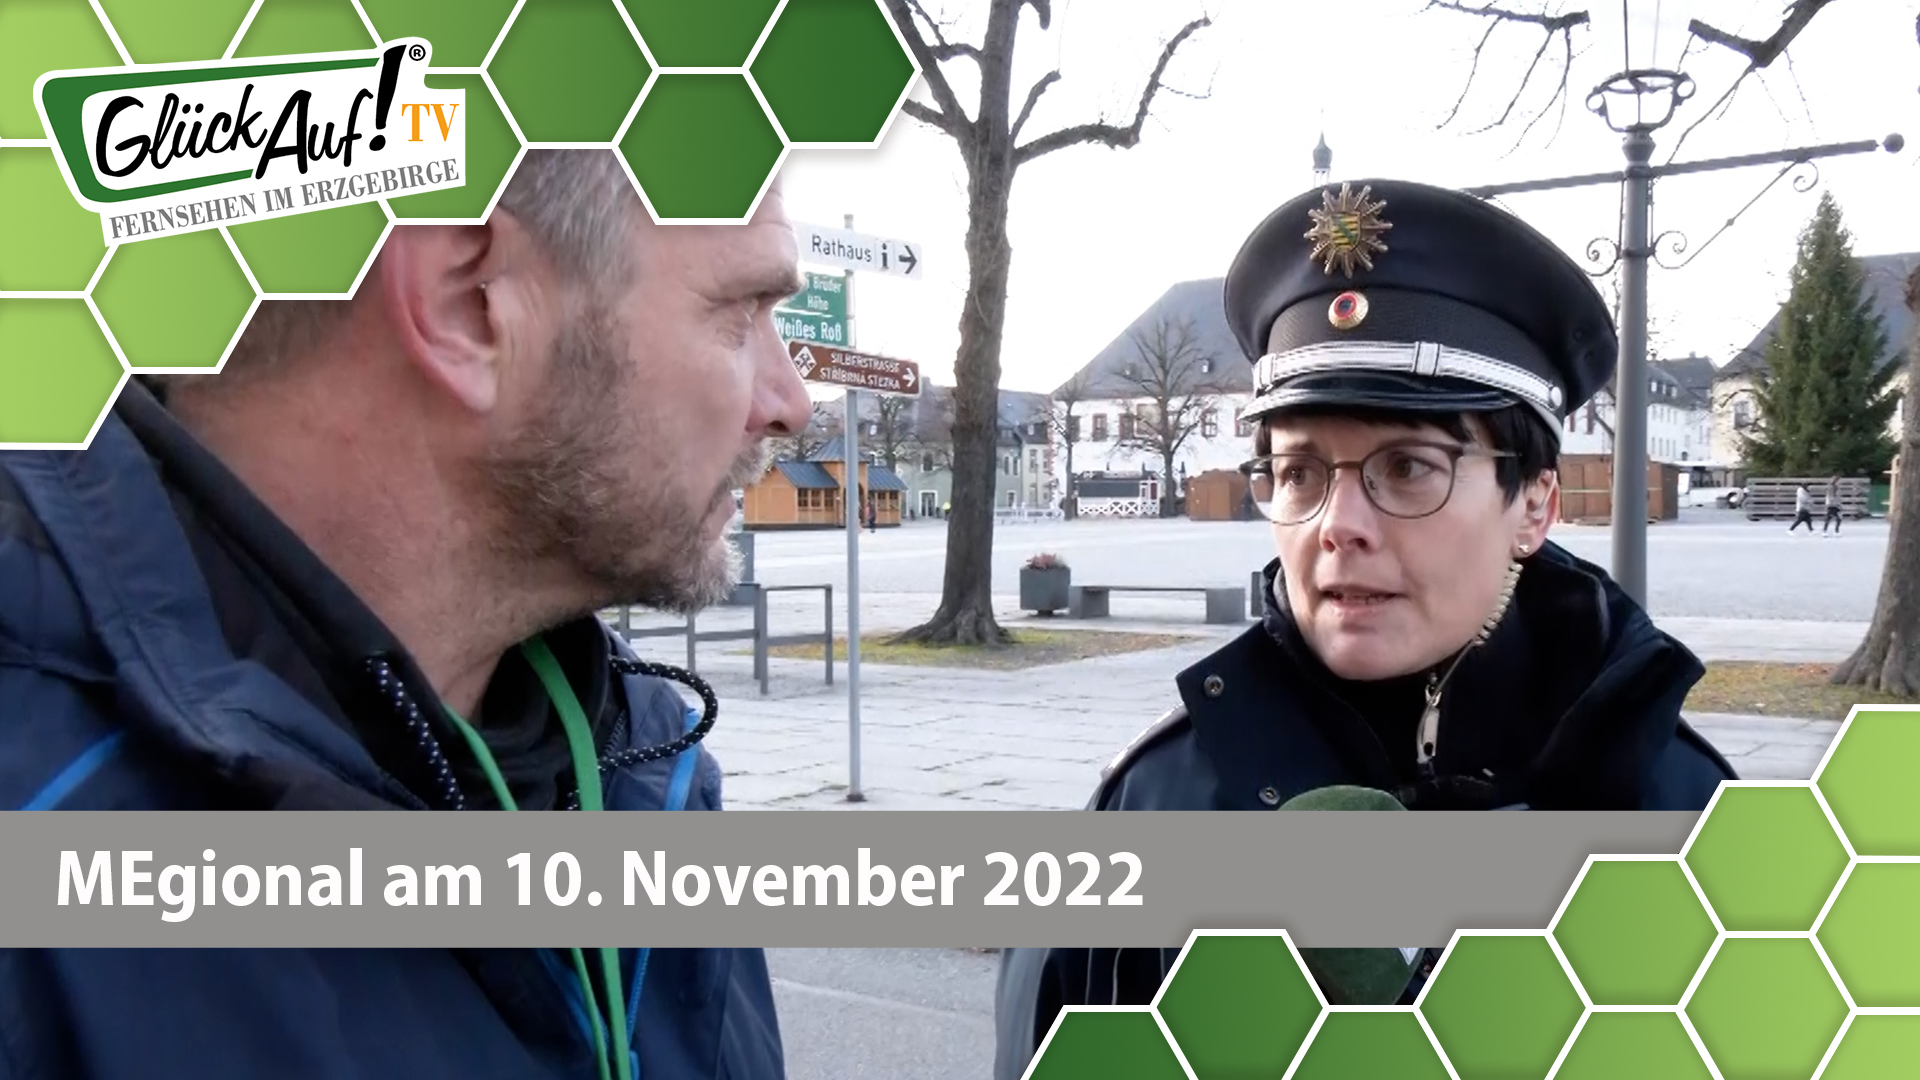 MEgional am 10. November 2022 - mit einer Zweimann-Demo in Marienberg